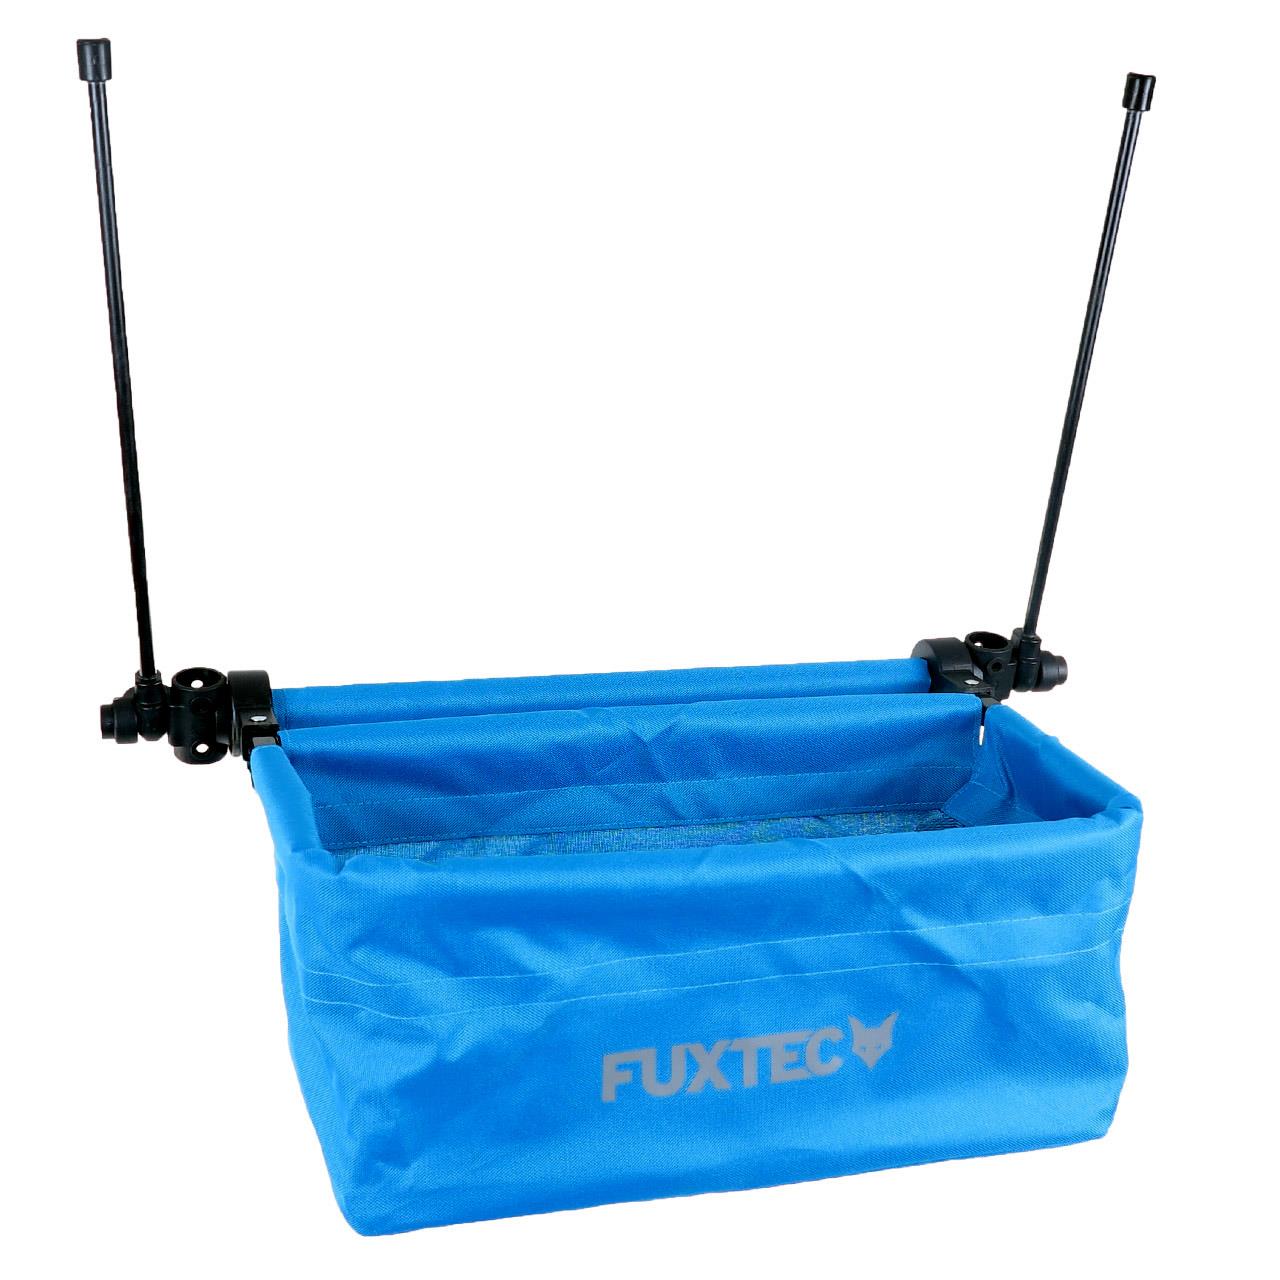 FUXTEC - Sac arrière bleu pour le chariot de transport Easy et Smart Cruiser